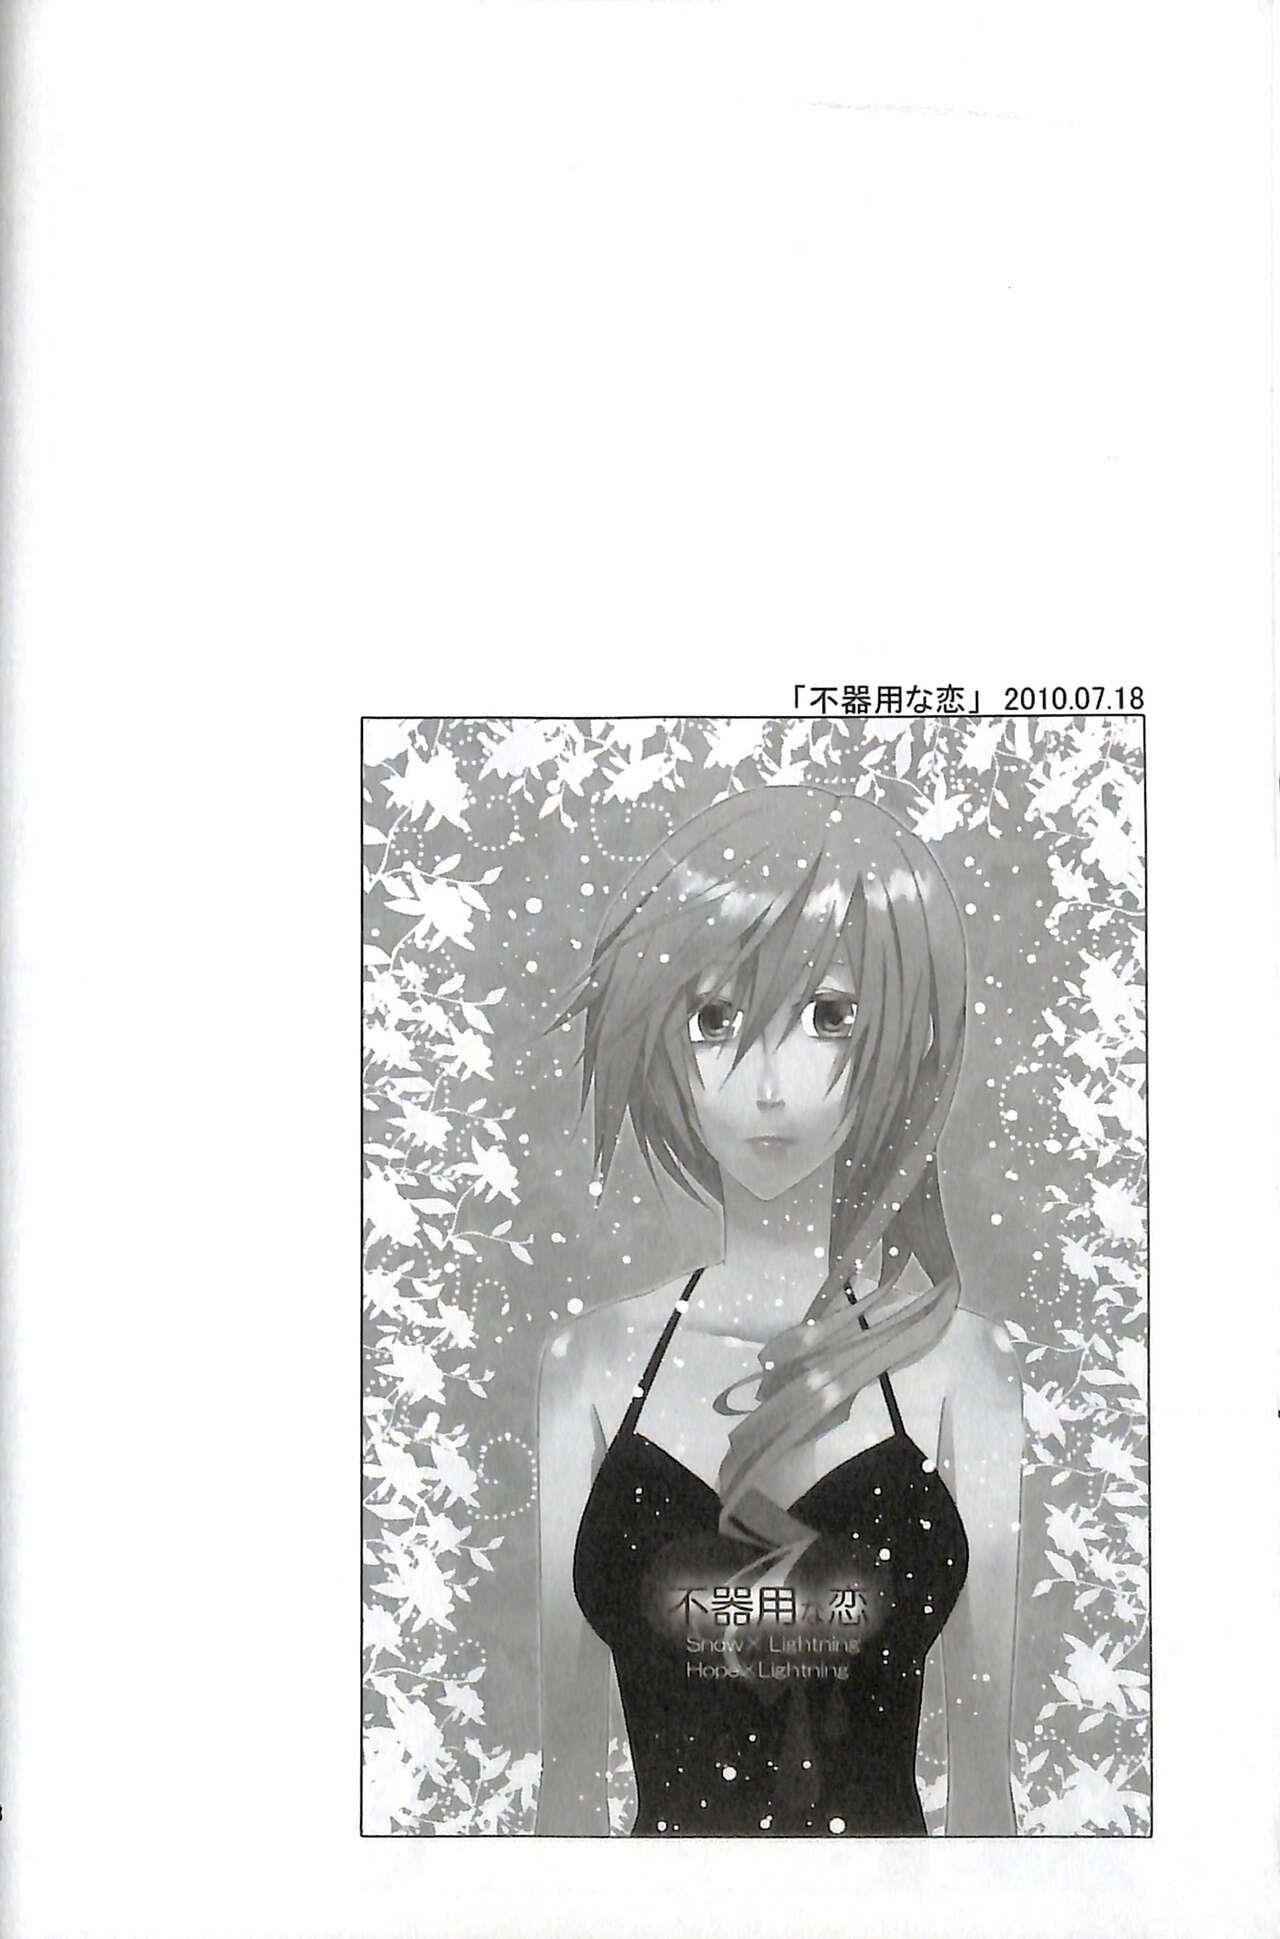 Final Fantasy 13 Fan book 49